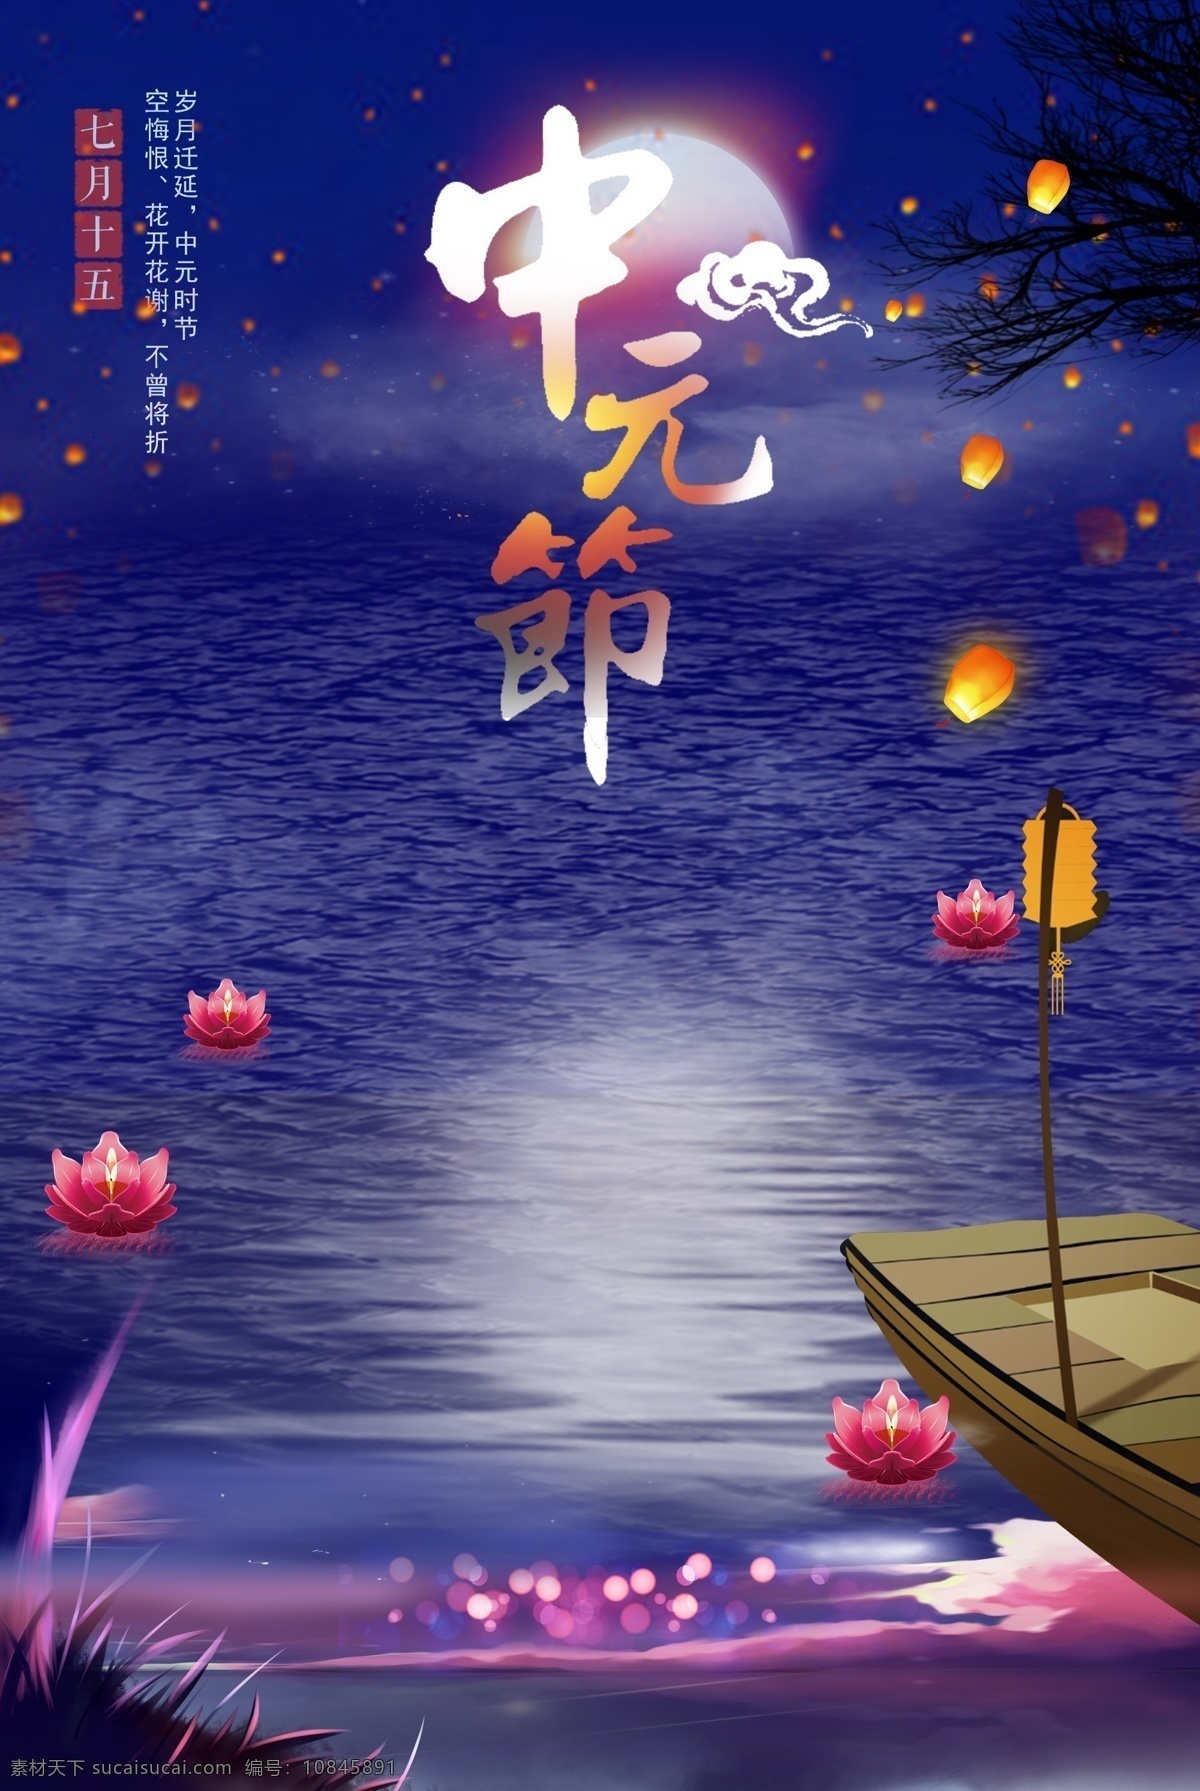 中元节 背景 图 传统 七月十五 花灯 灯 月亮 中元节广告 中元节背景